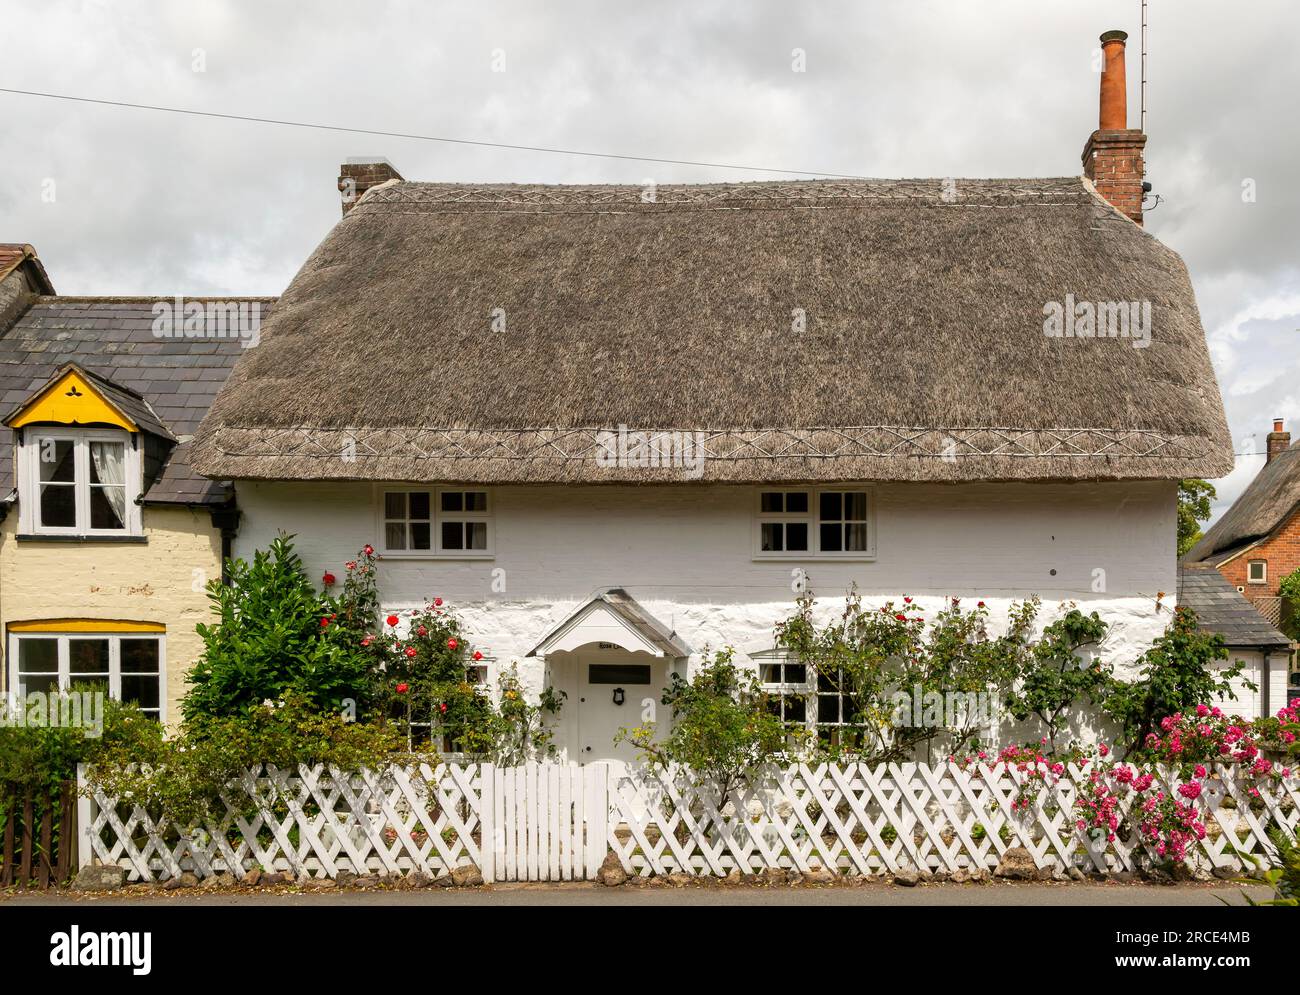 Jolie chaume historique dans le village d'Avebury, Wiltshire, Angleterre, Royaume-Uni Banque D'Images